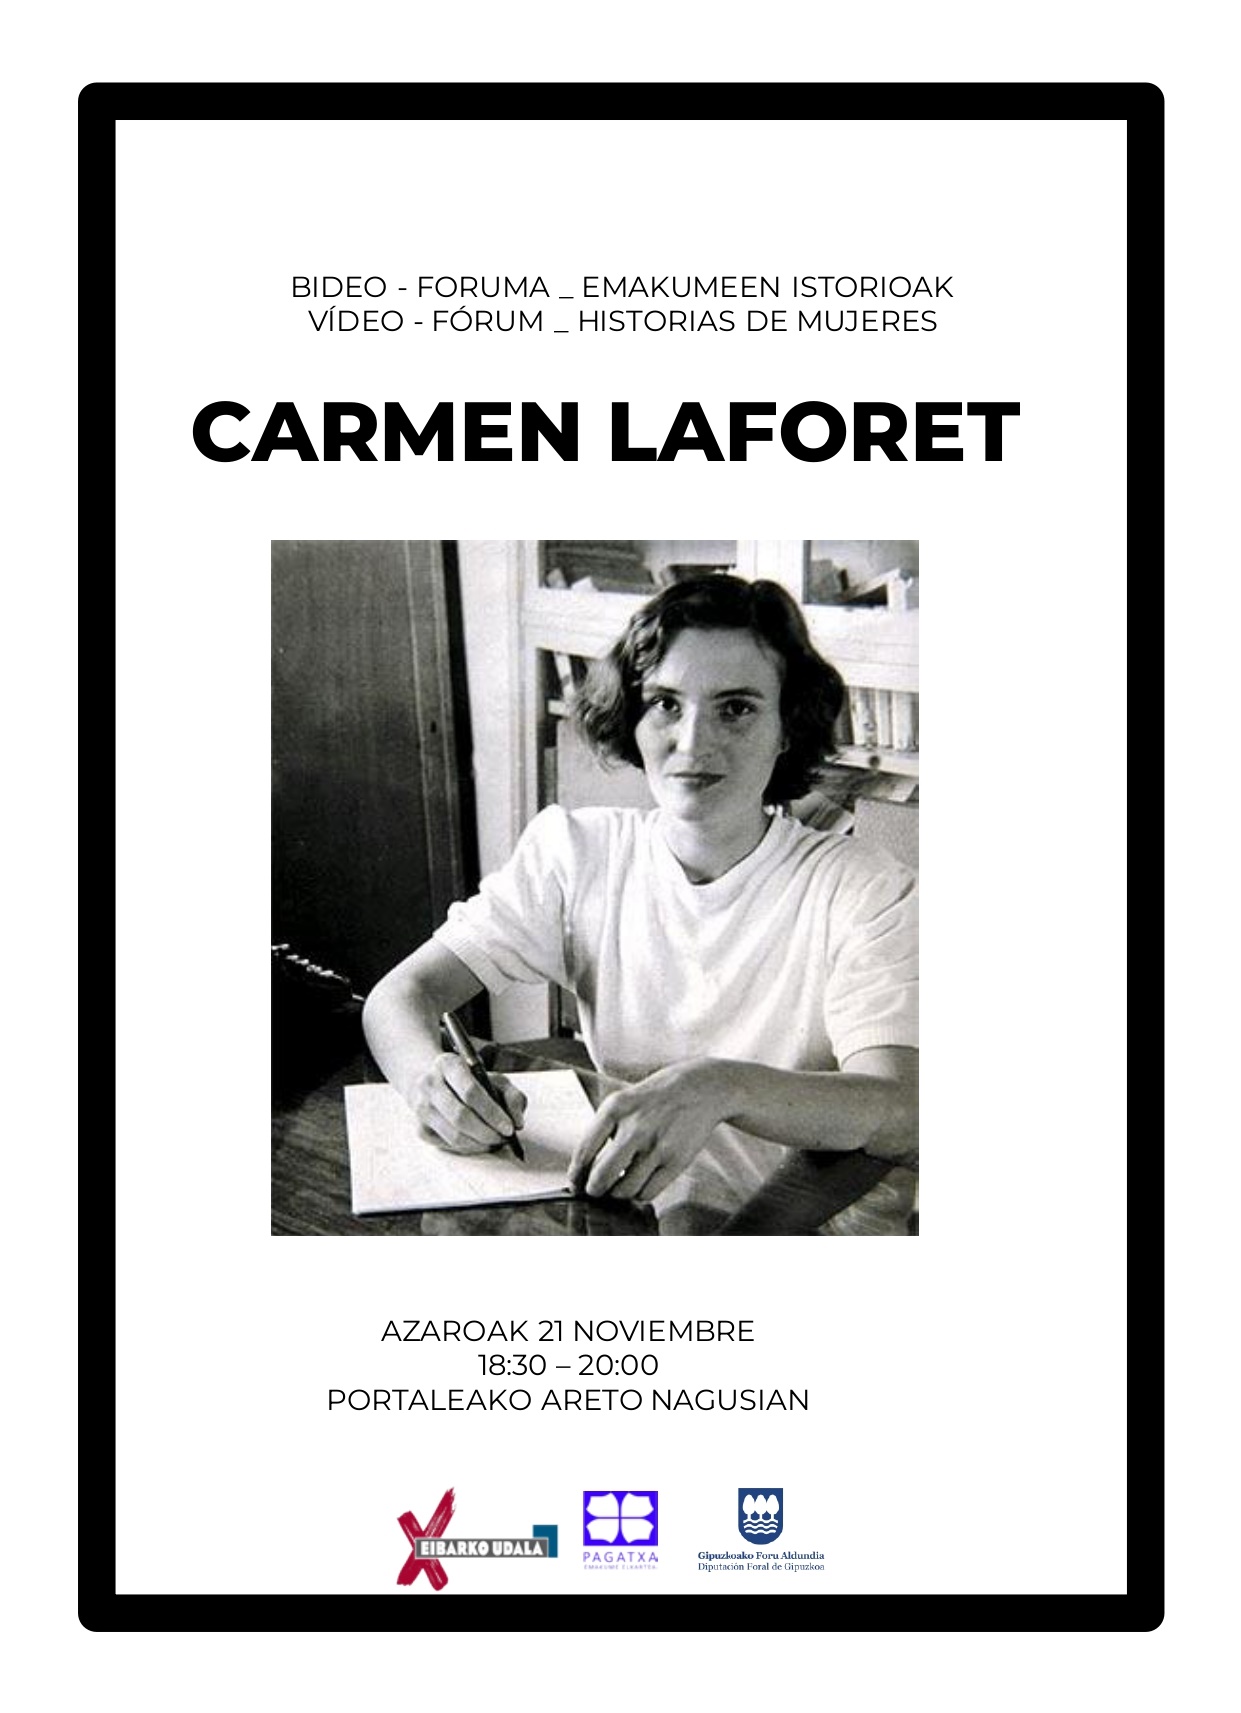 Emakumeen istorioen Bideo Foruma: Carmen Laforet